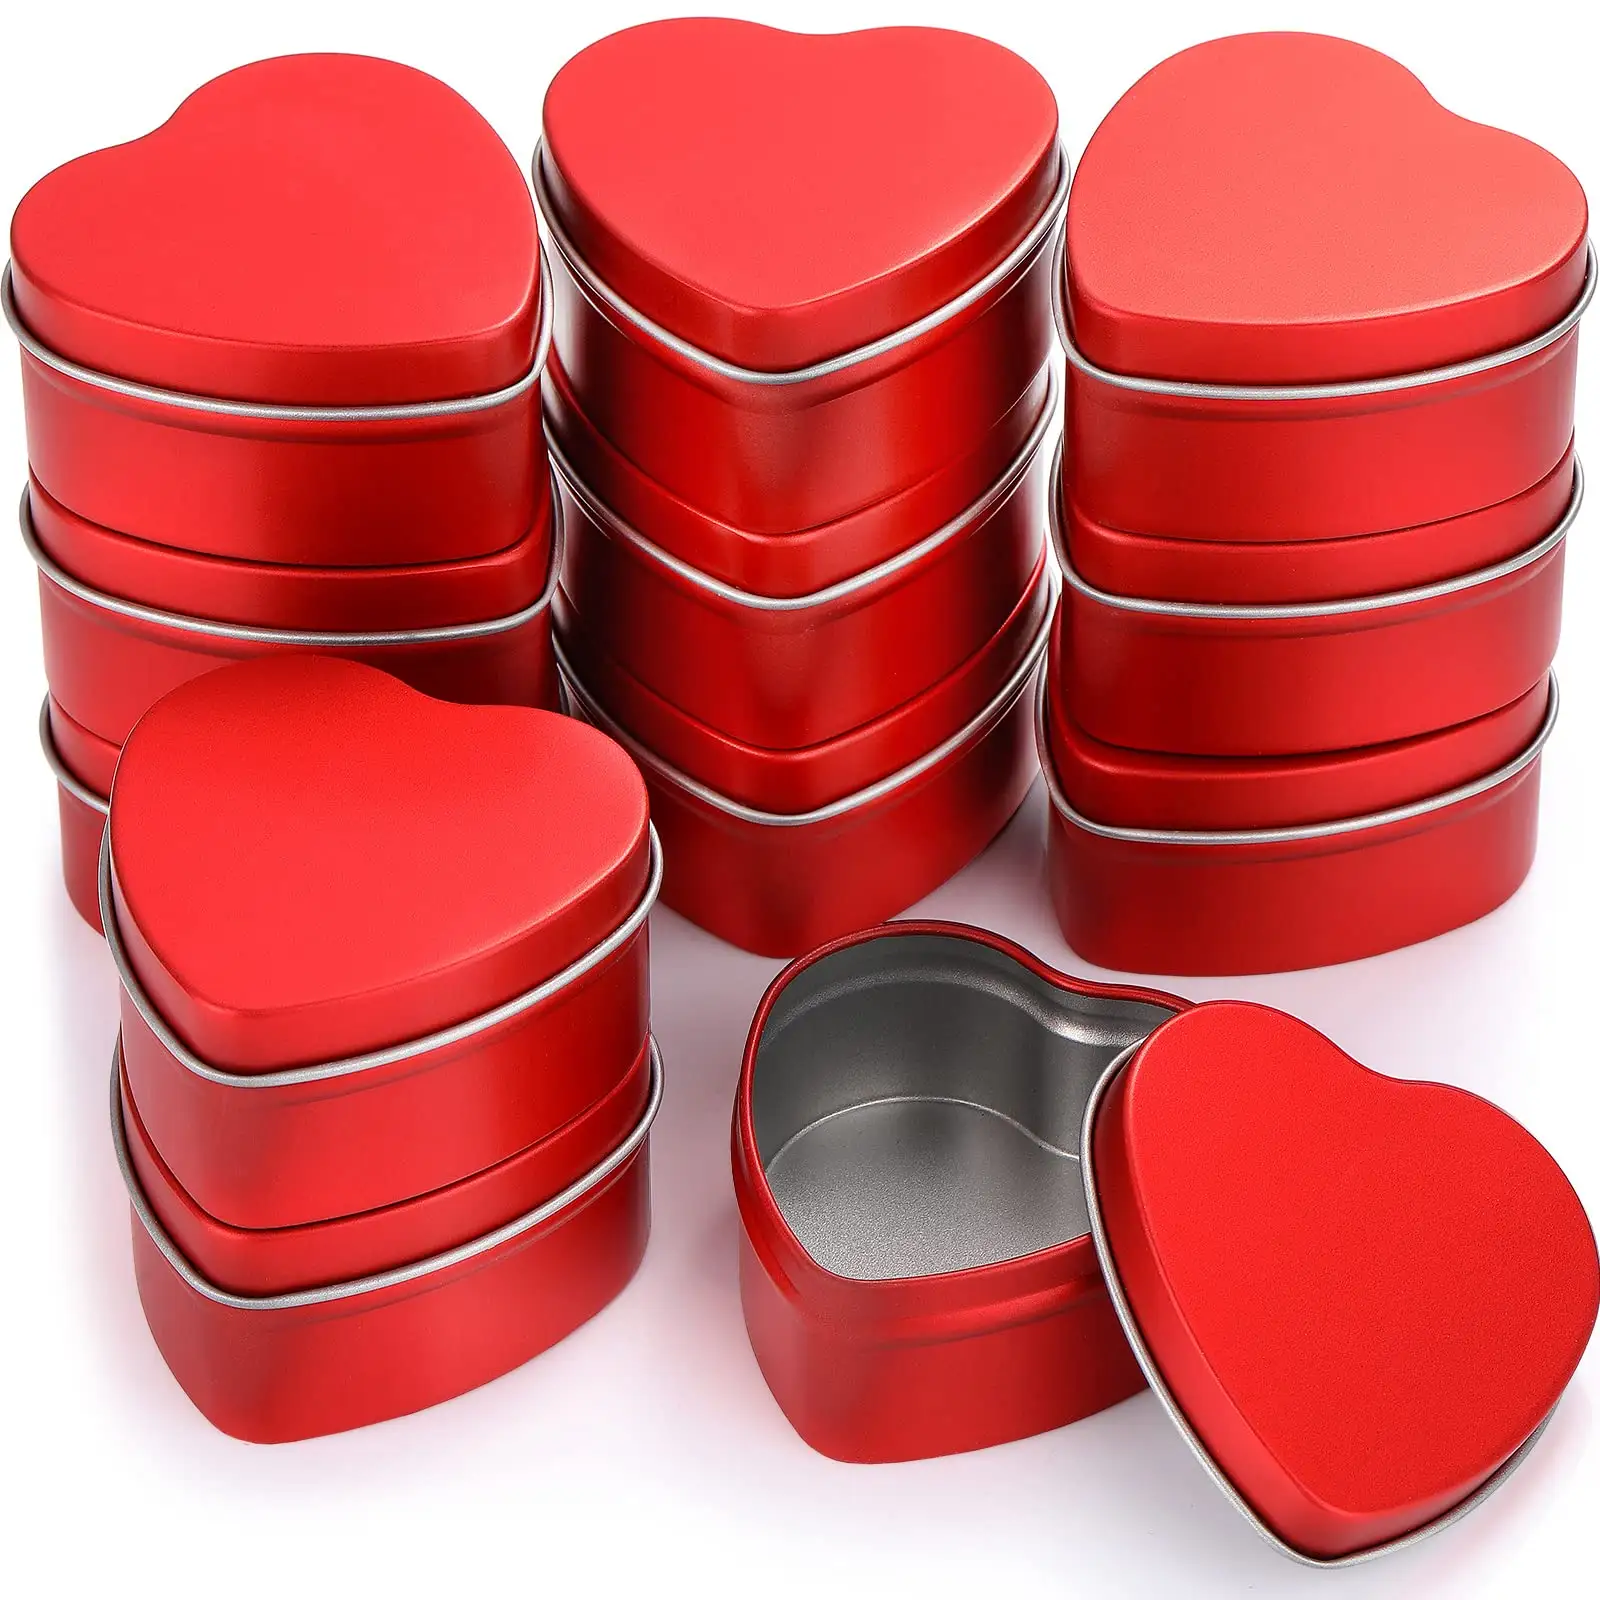 En gros en forme de coeur rouge boîtes en métal boîte de qualité alimentaire bonbons Biscuits conteneur étui boîtes de conserve pour bougies